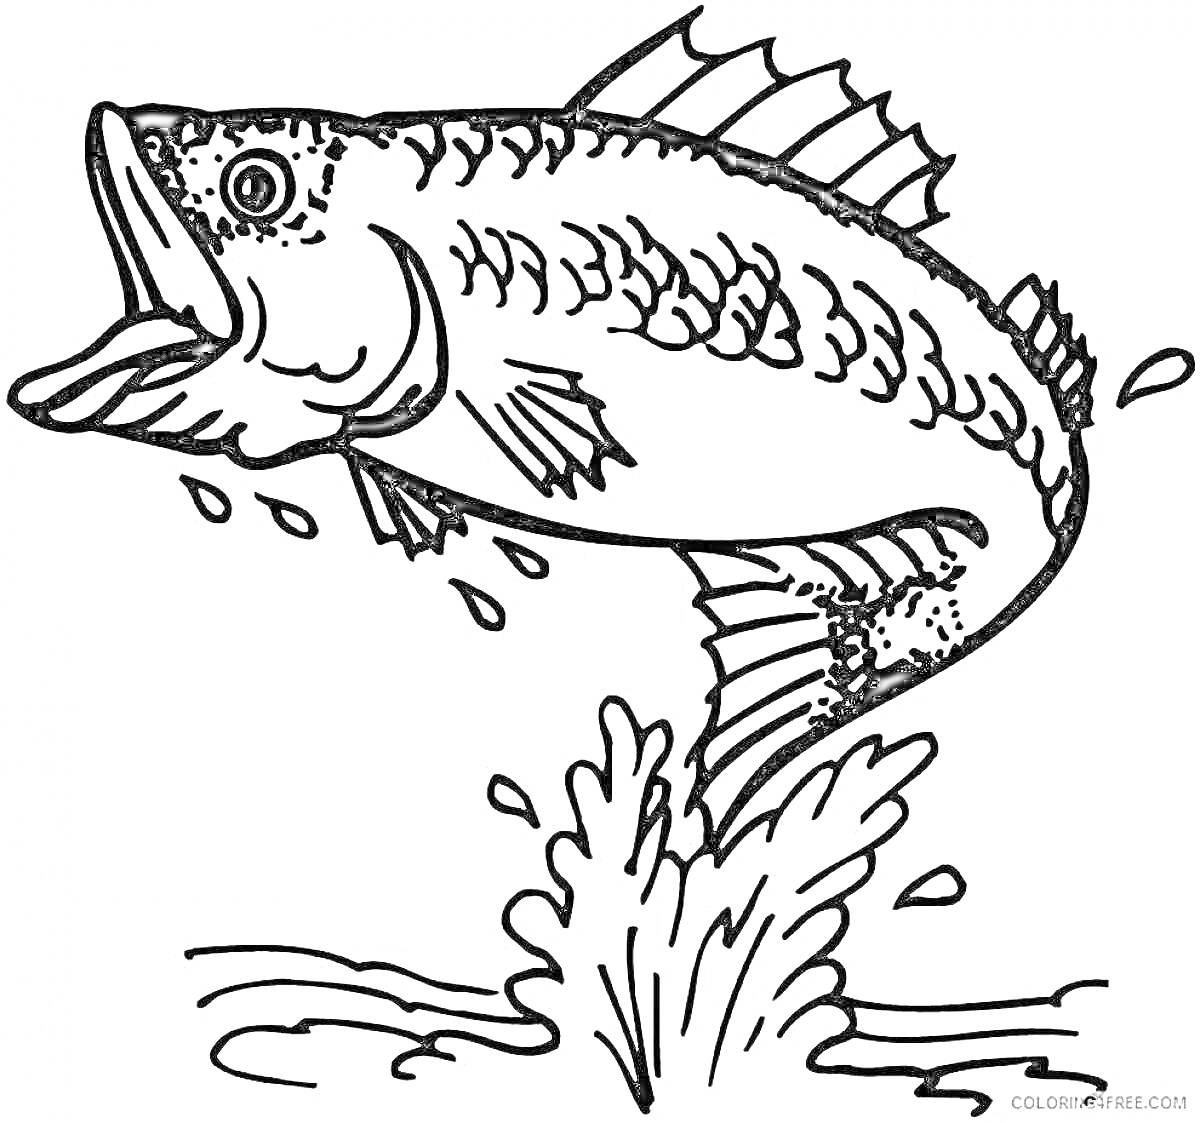 Раскраска Прыгающая рыба с брызгами воды